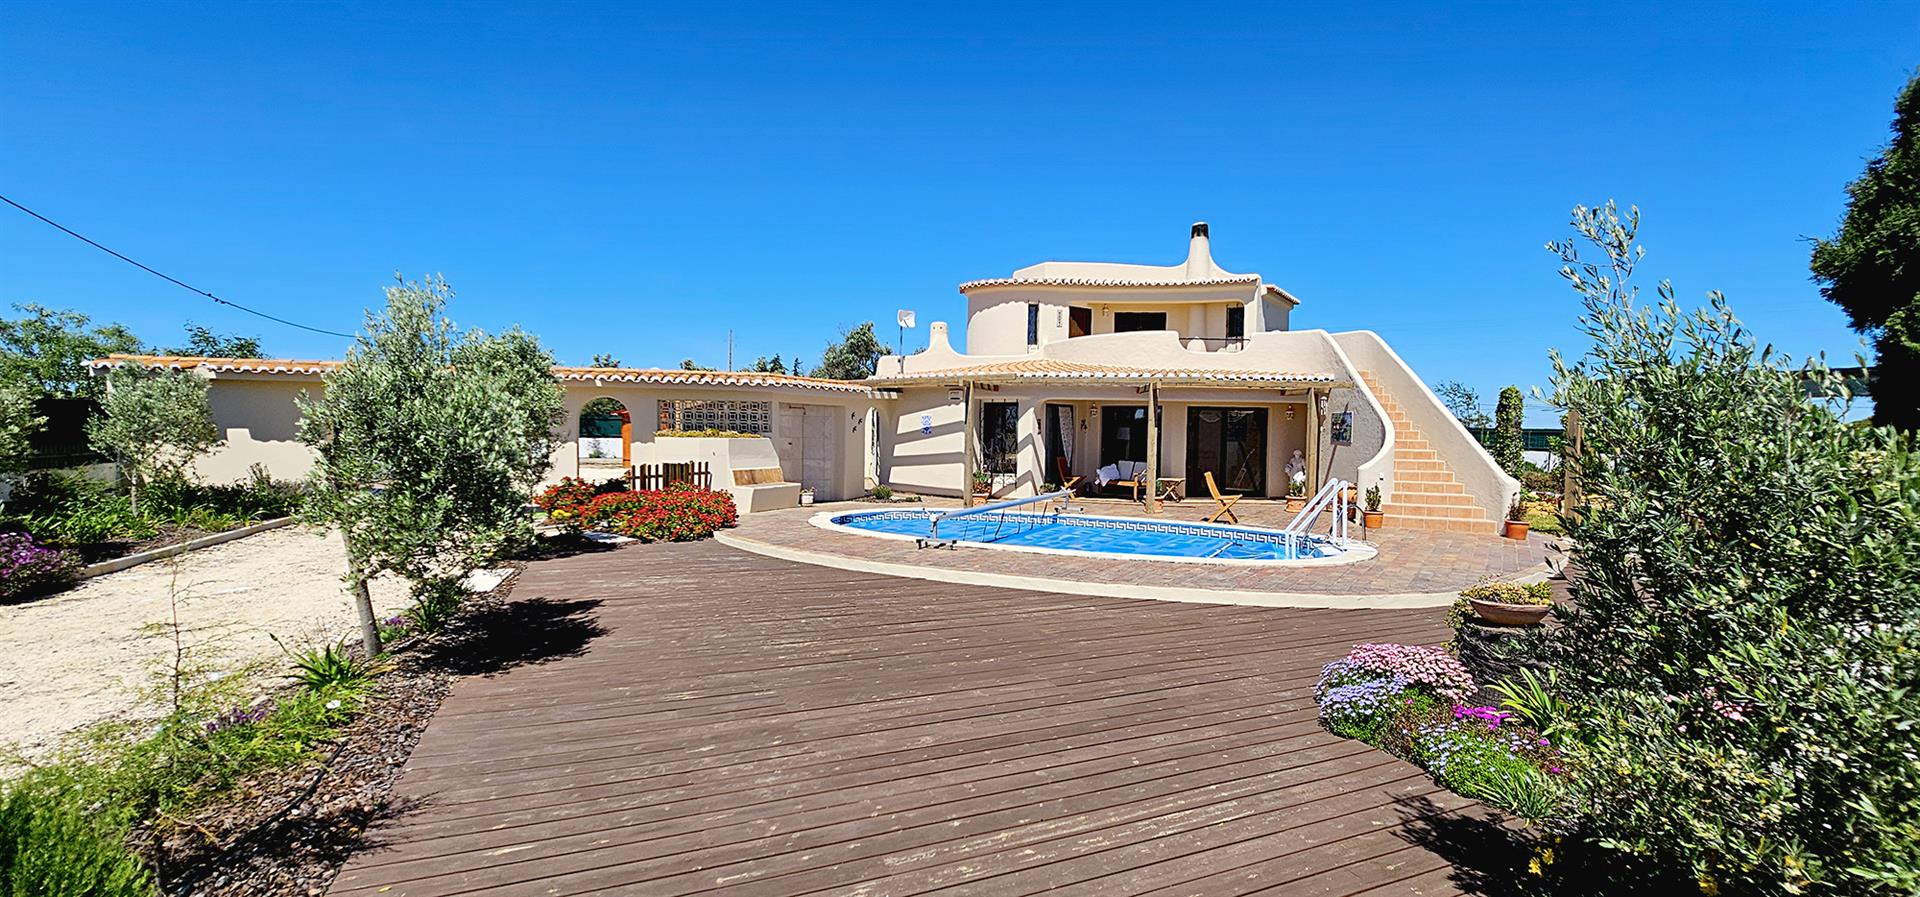 Tervetuloa tulevaan kotiisi kauniissa Algarvessa